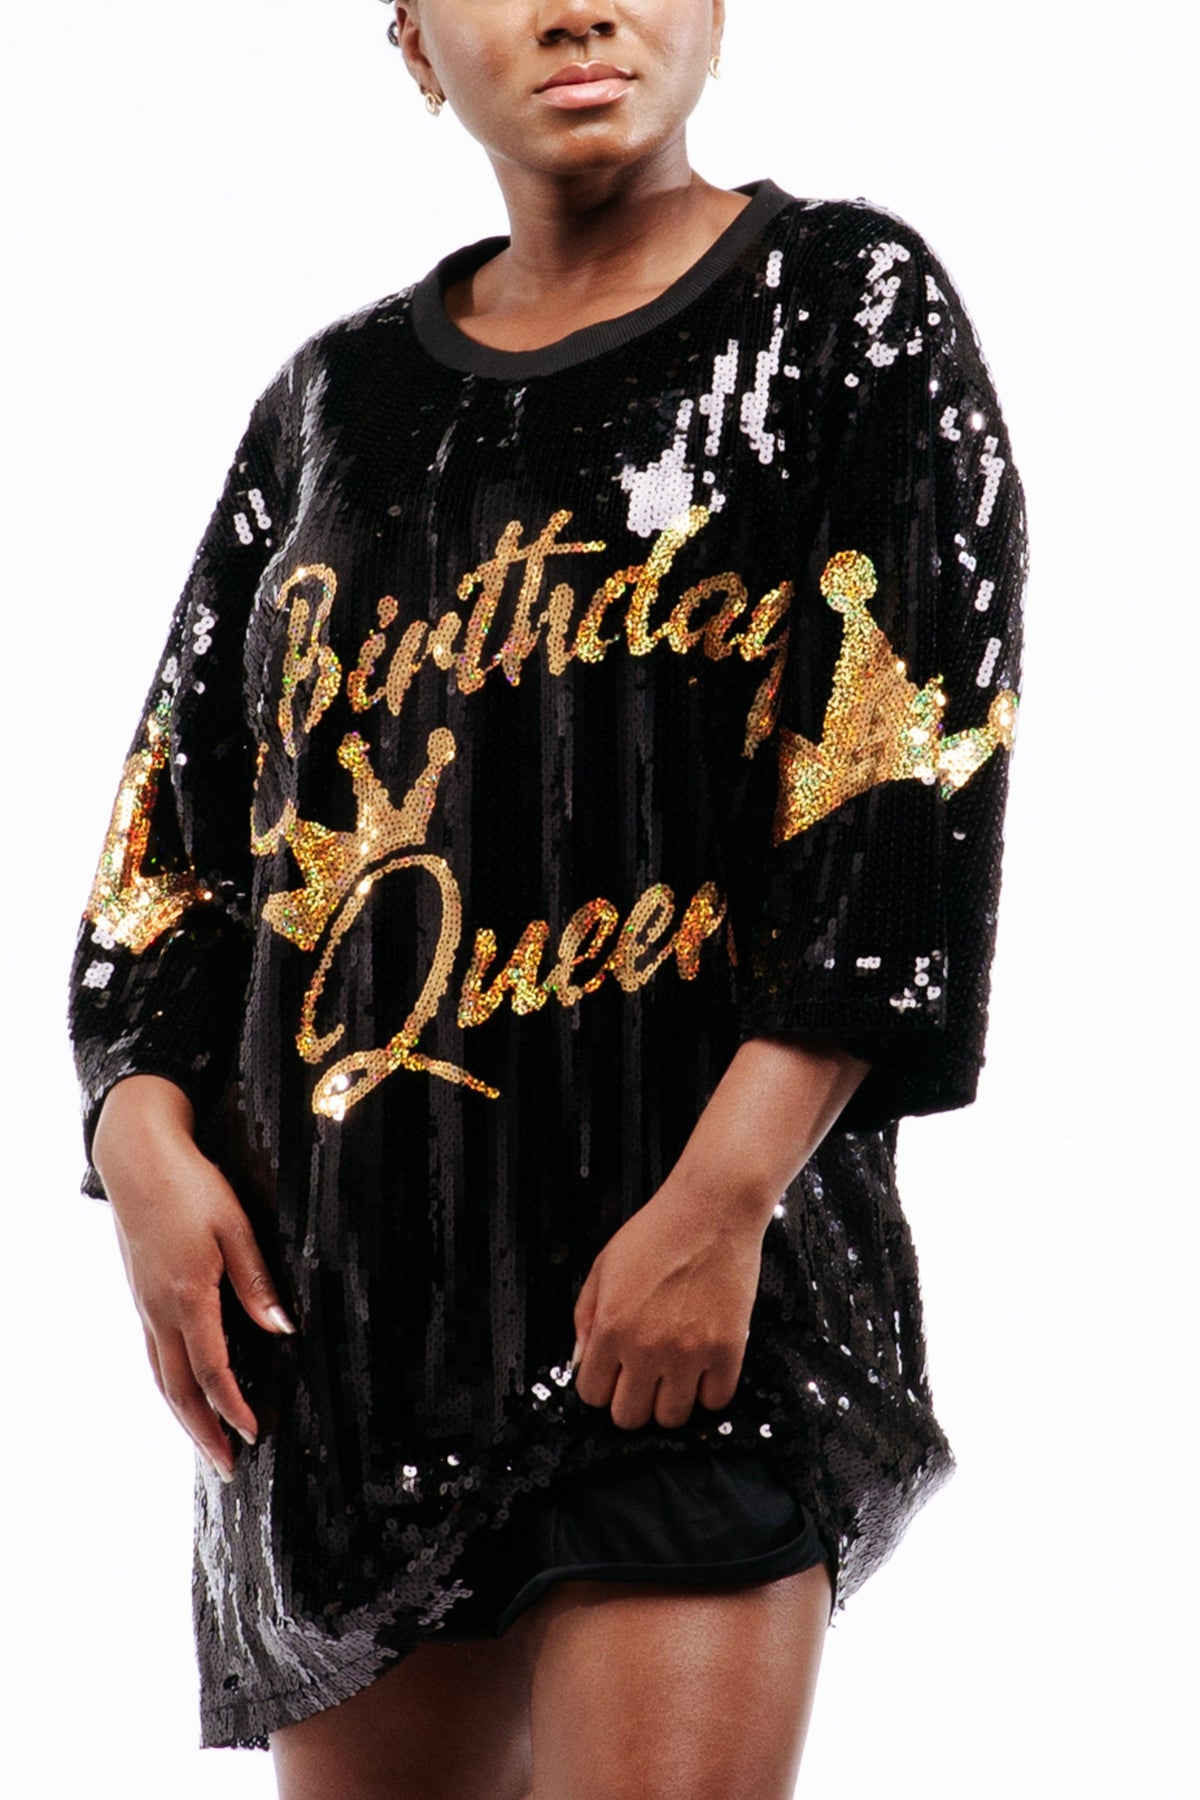 Birthday Queen Sequin Dress - Black - SEQUIN FANS